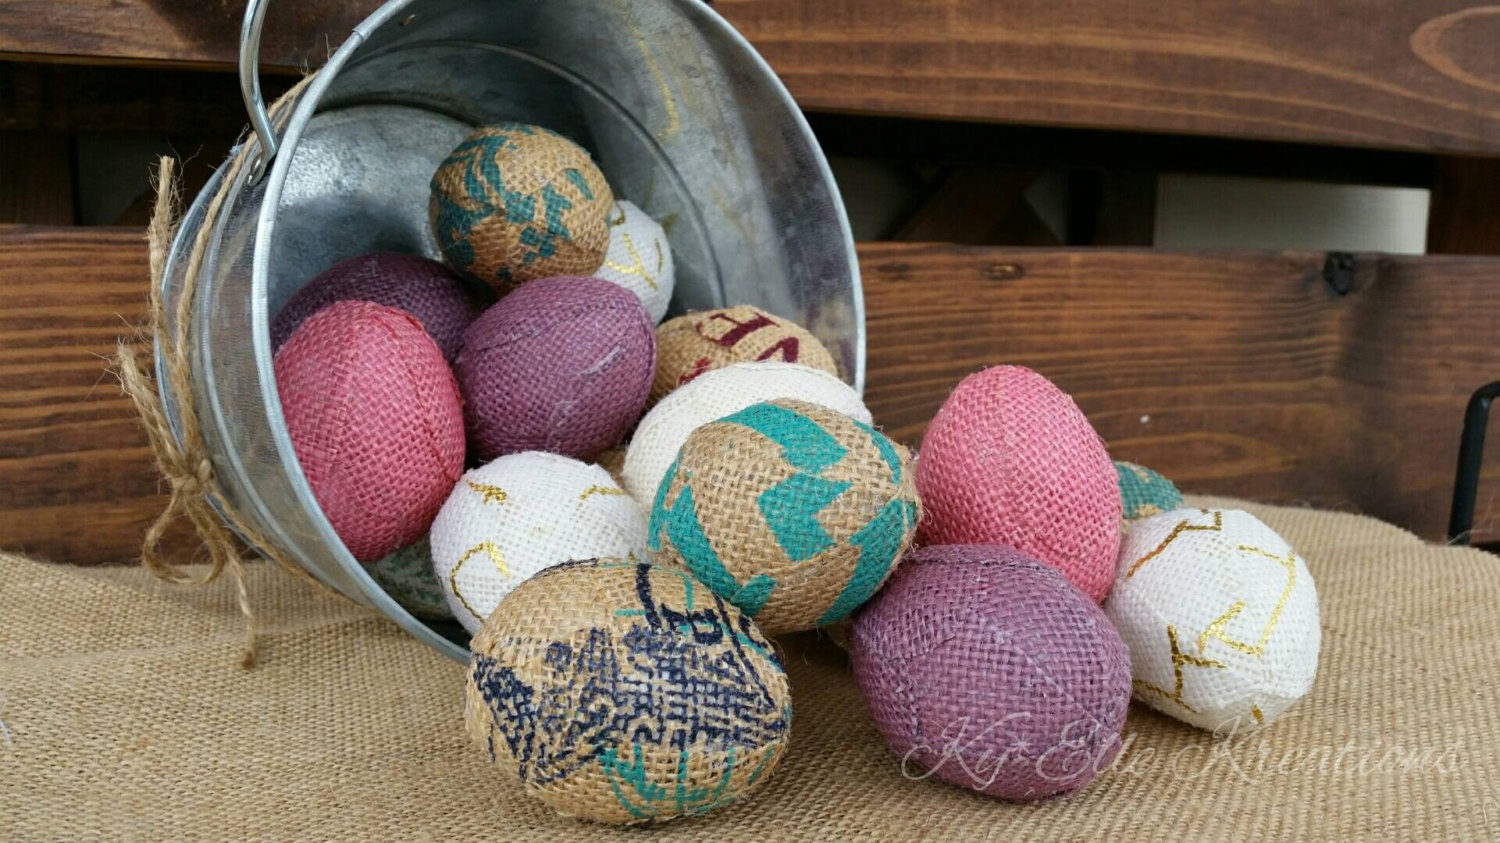 Handmade Burlap Easter Eggs in pastel colors, pinks, purples, aqua, tan and creams. Displayed in tin bucket.